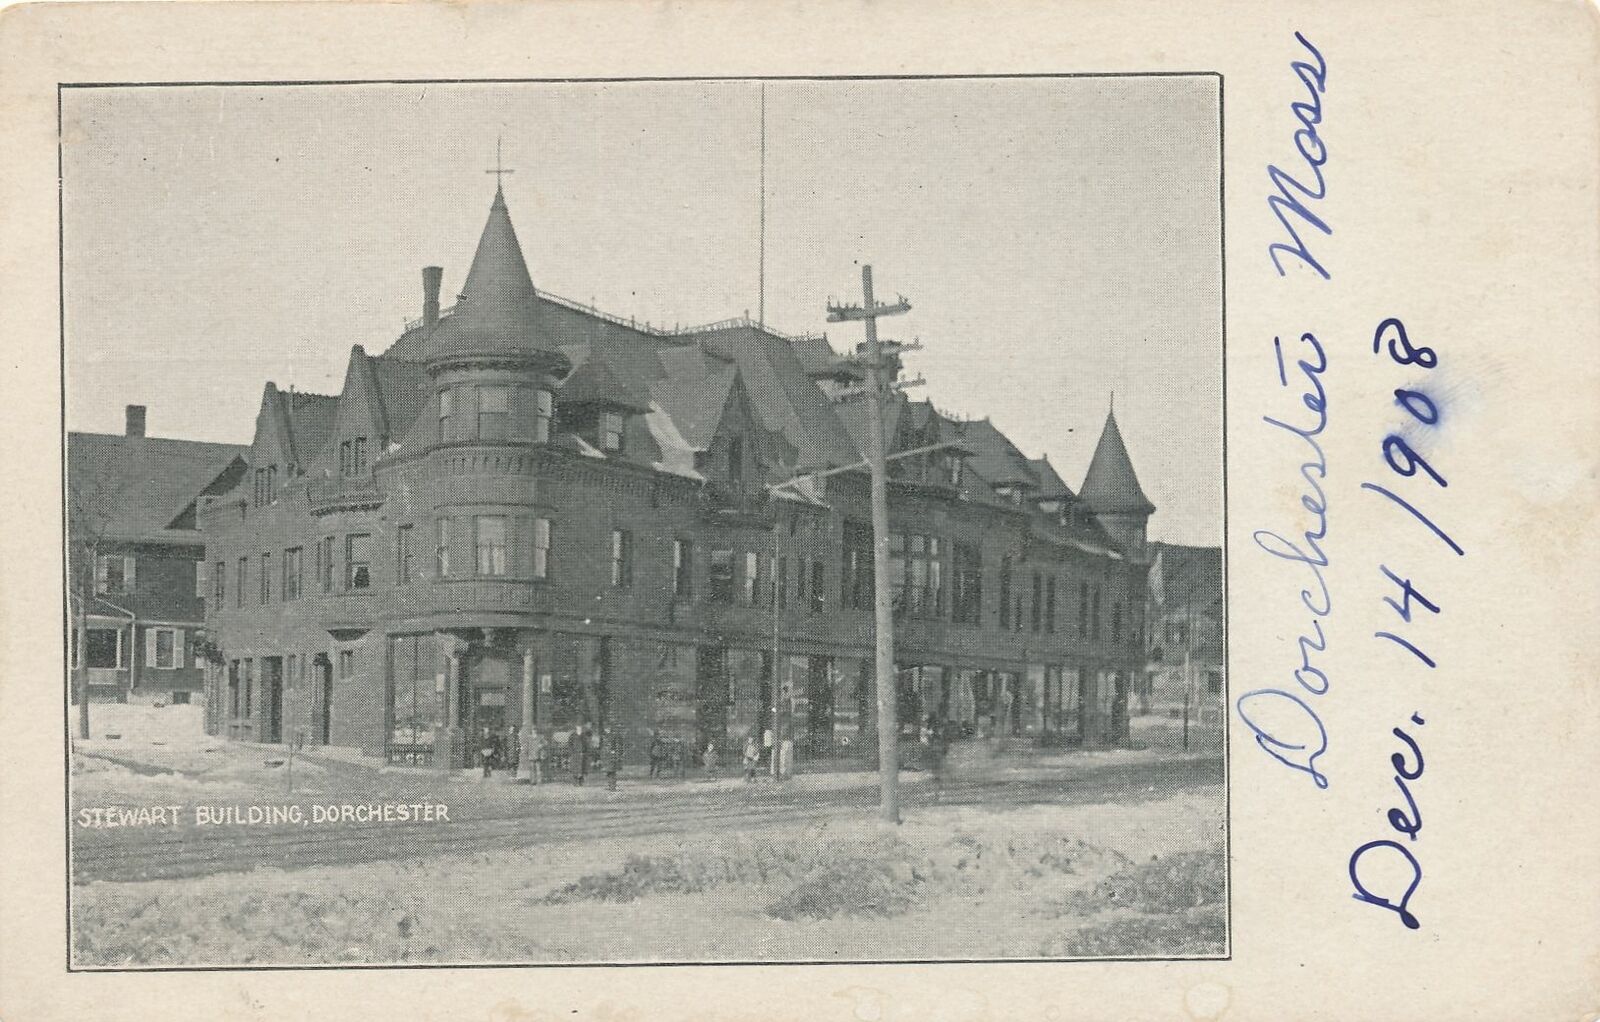 BOSTON MA - Stewart Building Dorchester - udb (pre 1908)